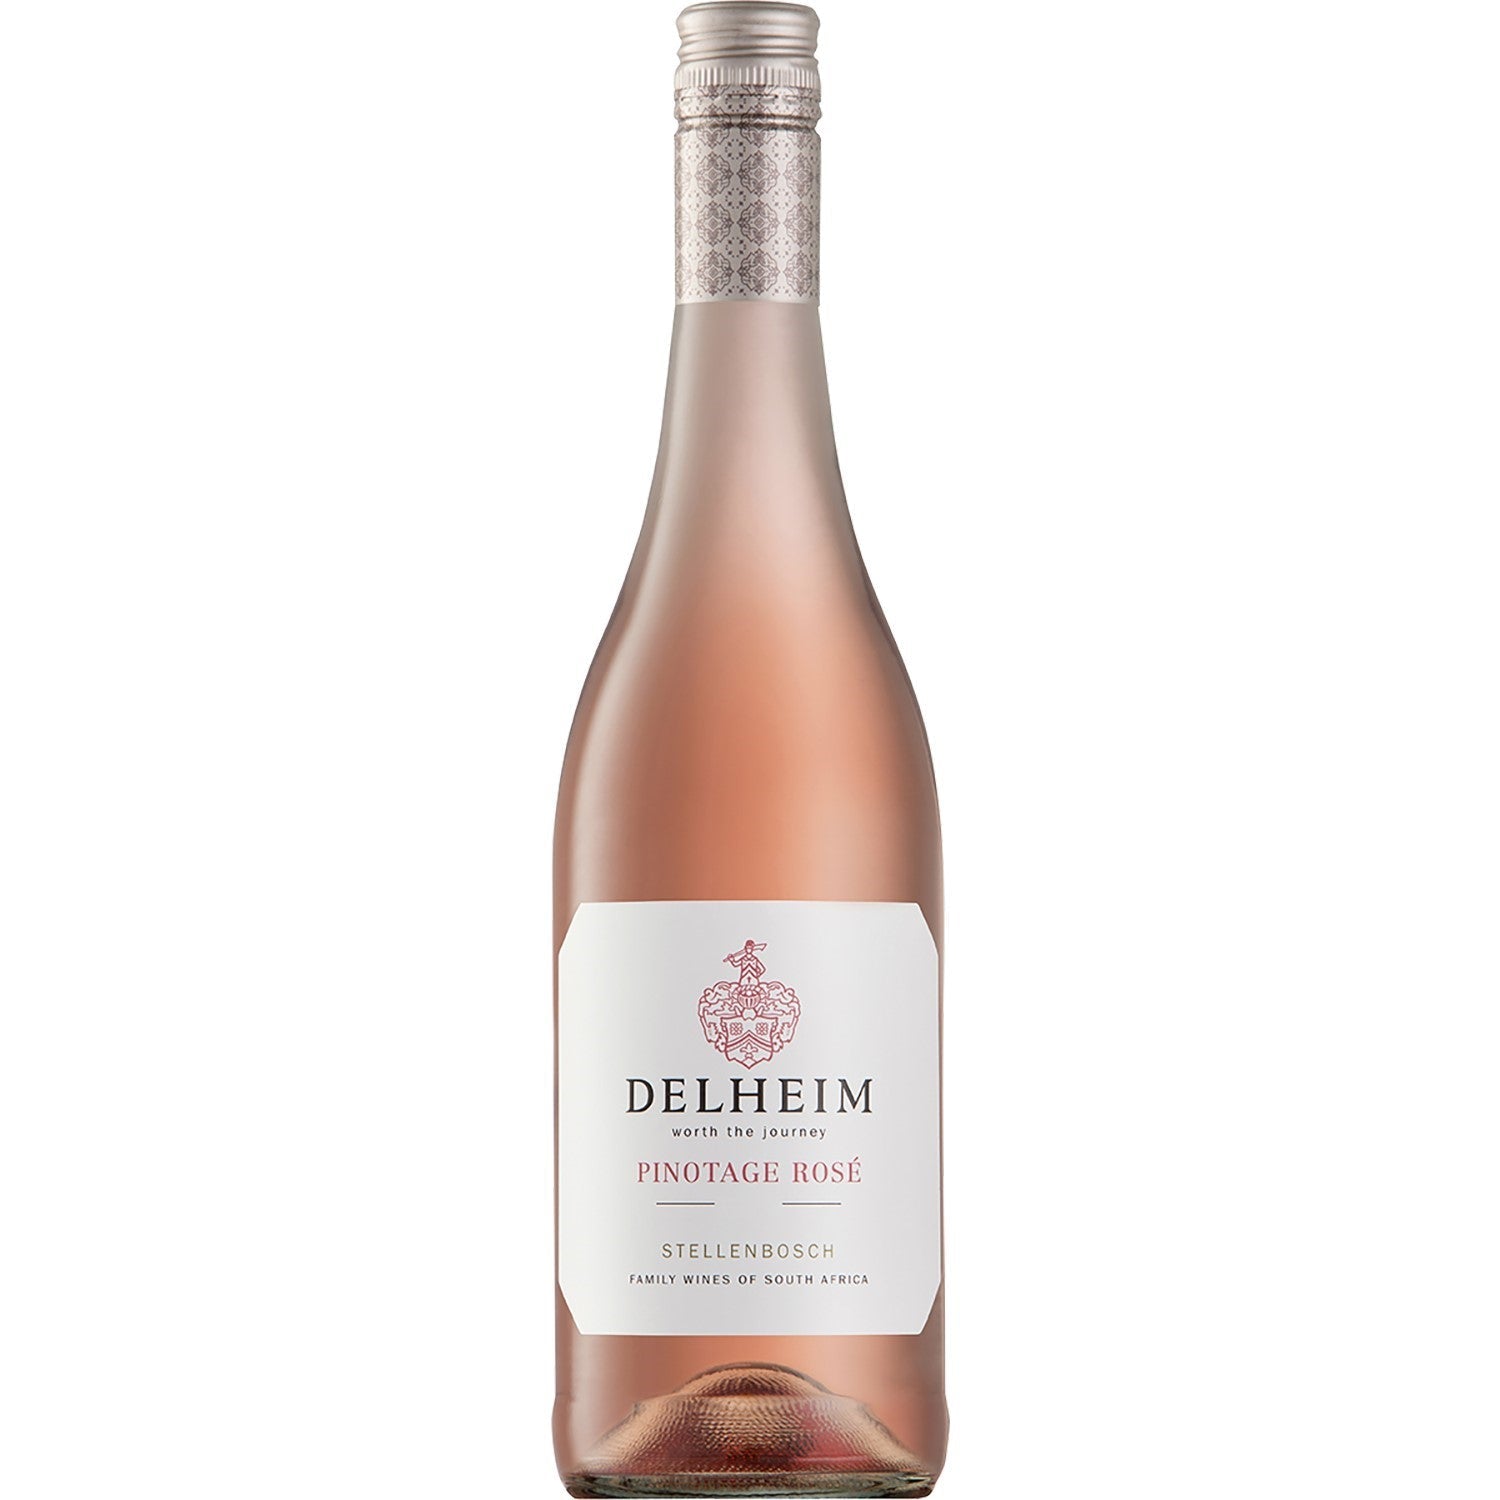 Delheim Pinotage Rosé Coastal Region Roséwein Wein trocken Südafrika (3 x 1.5l) - Versanel -